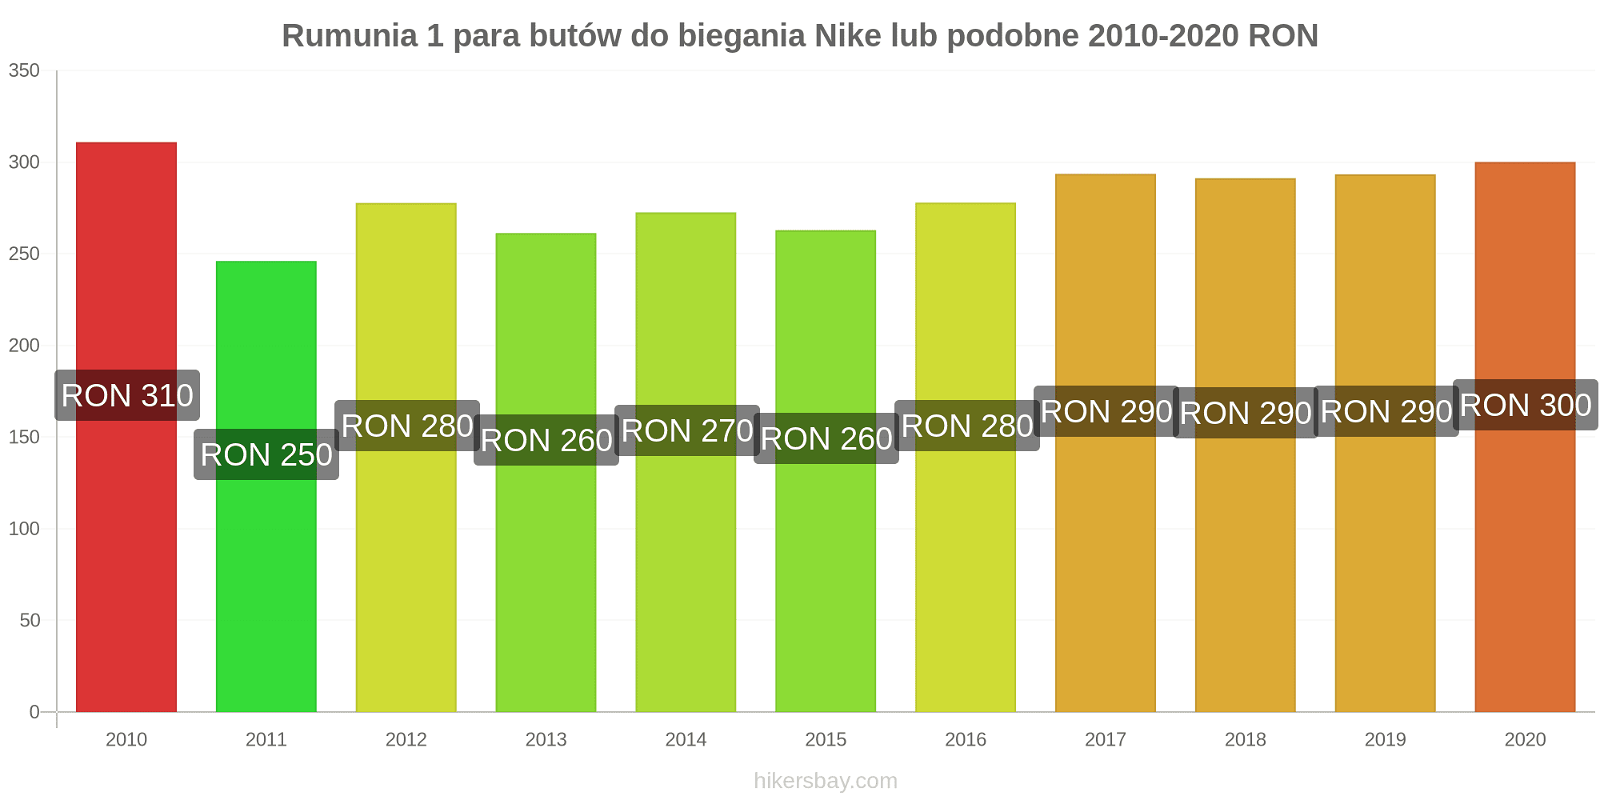 Rumunia zmiany cen 1 para butów do biegania Nike lub podobne hikersbay.com